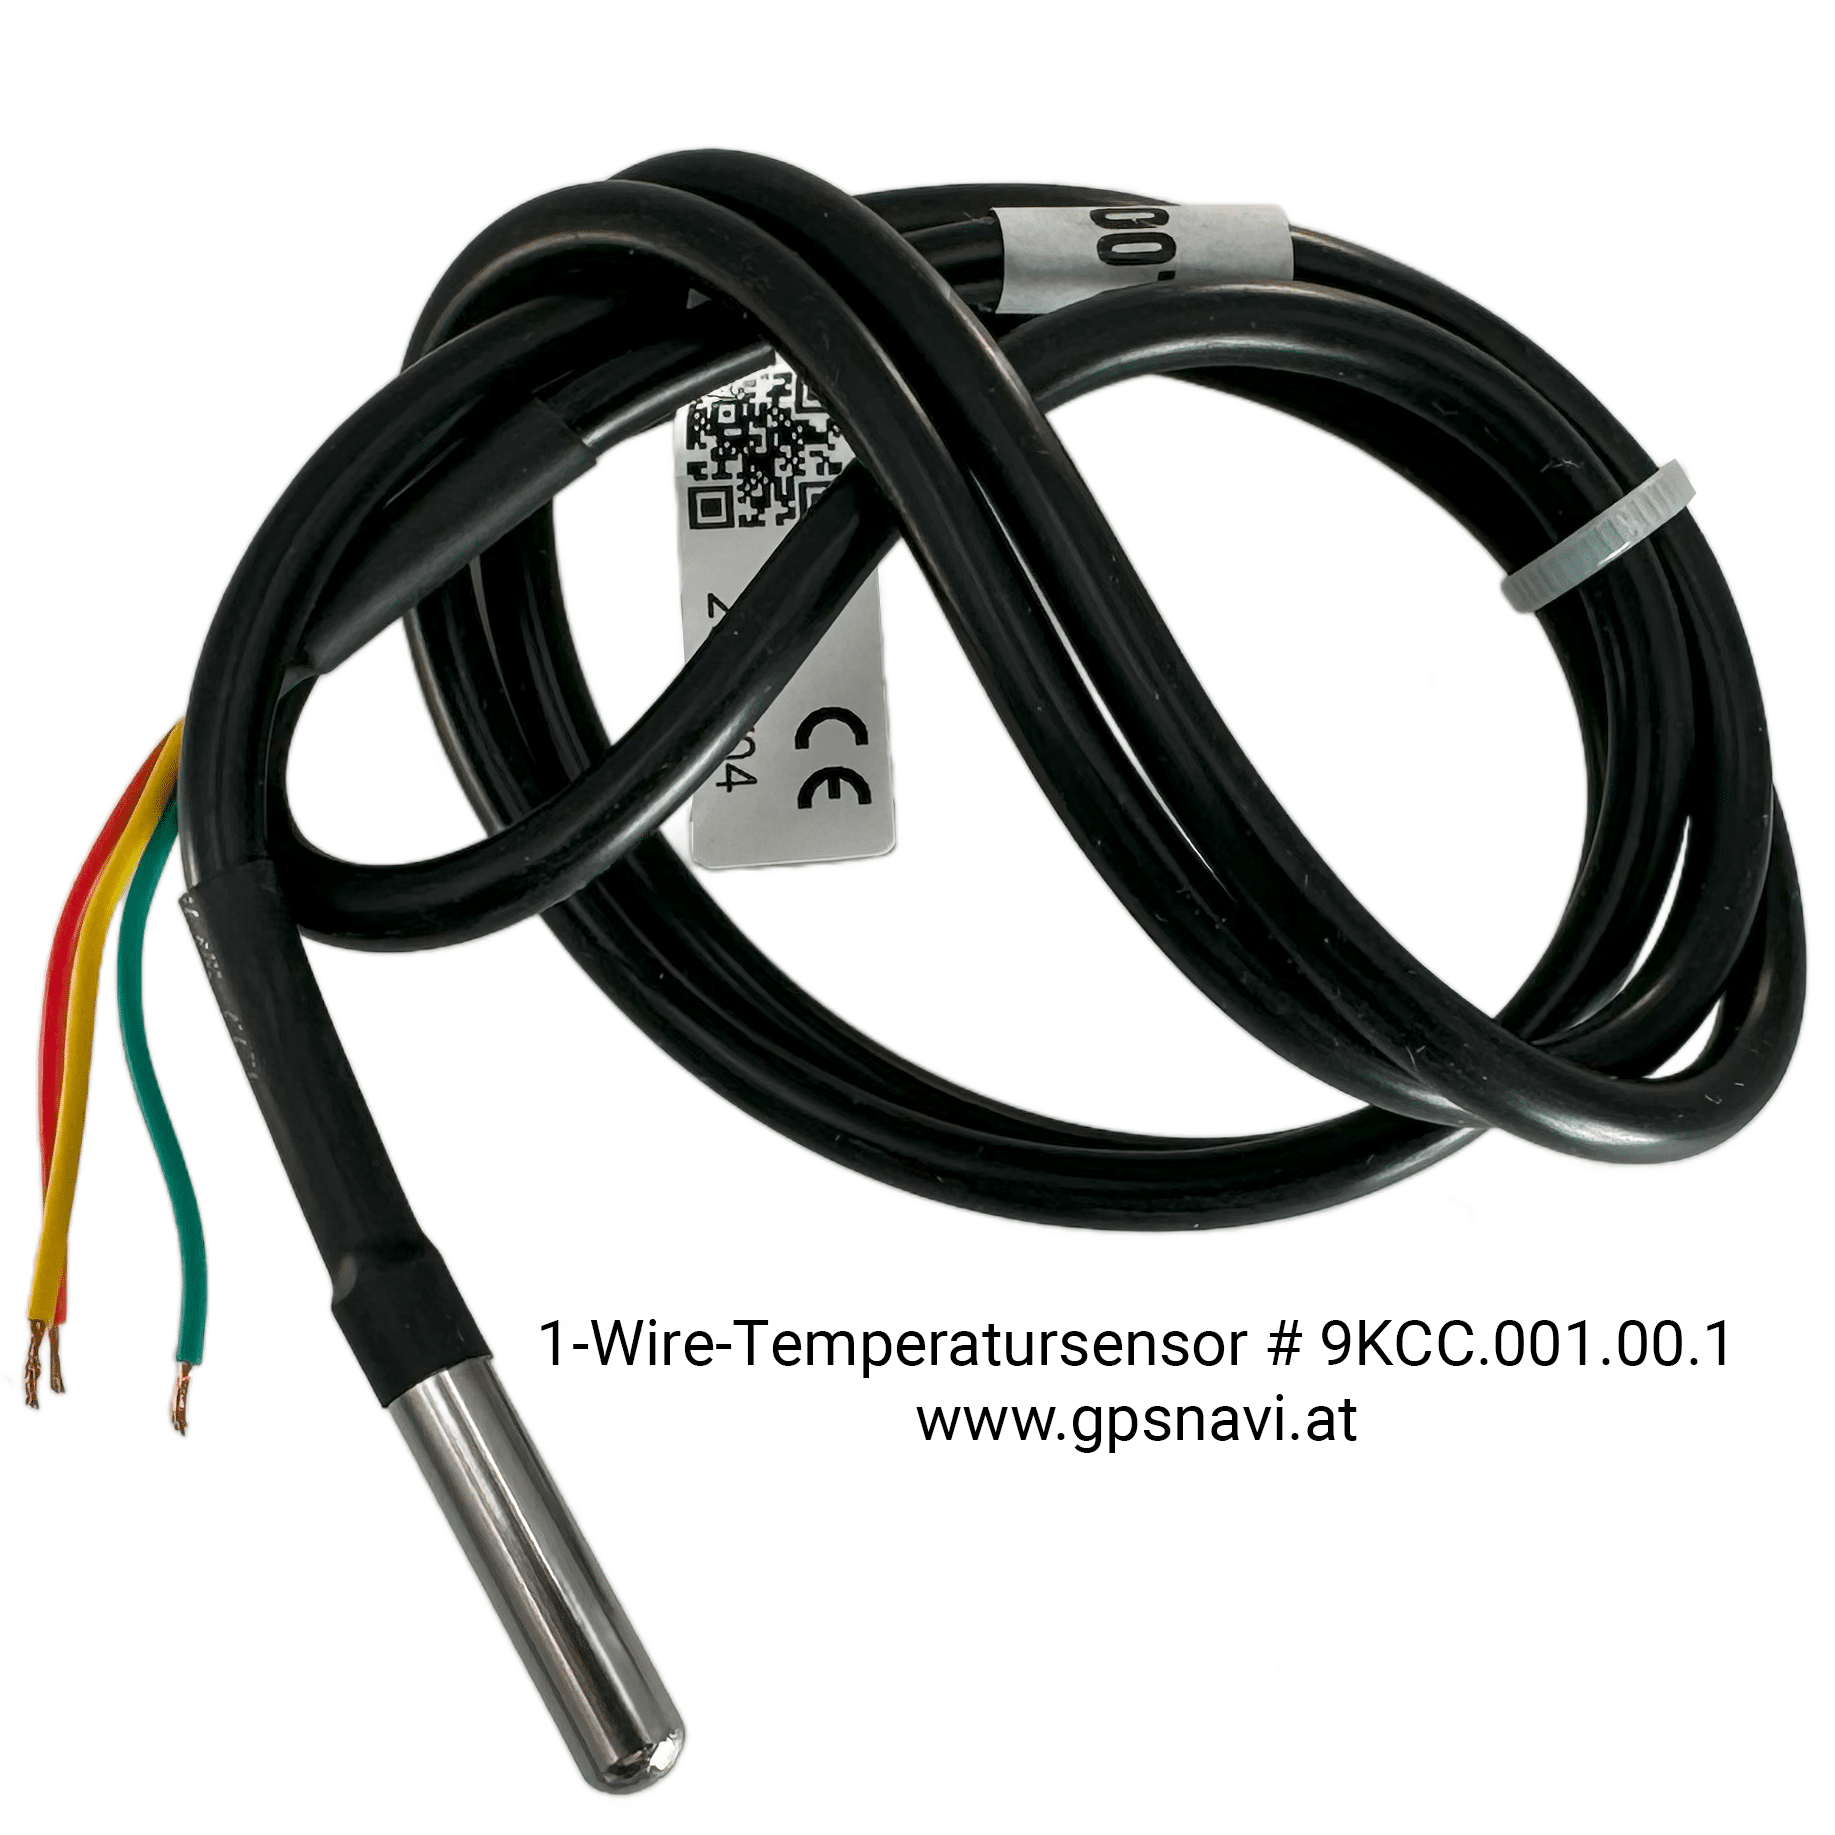 1-Wire-Temperatursensor